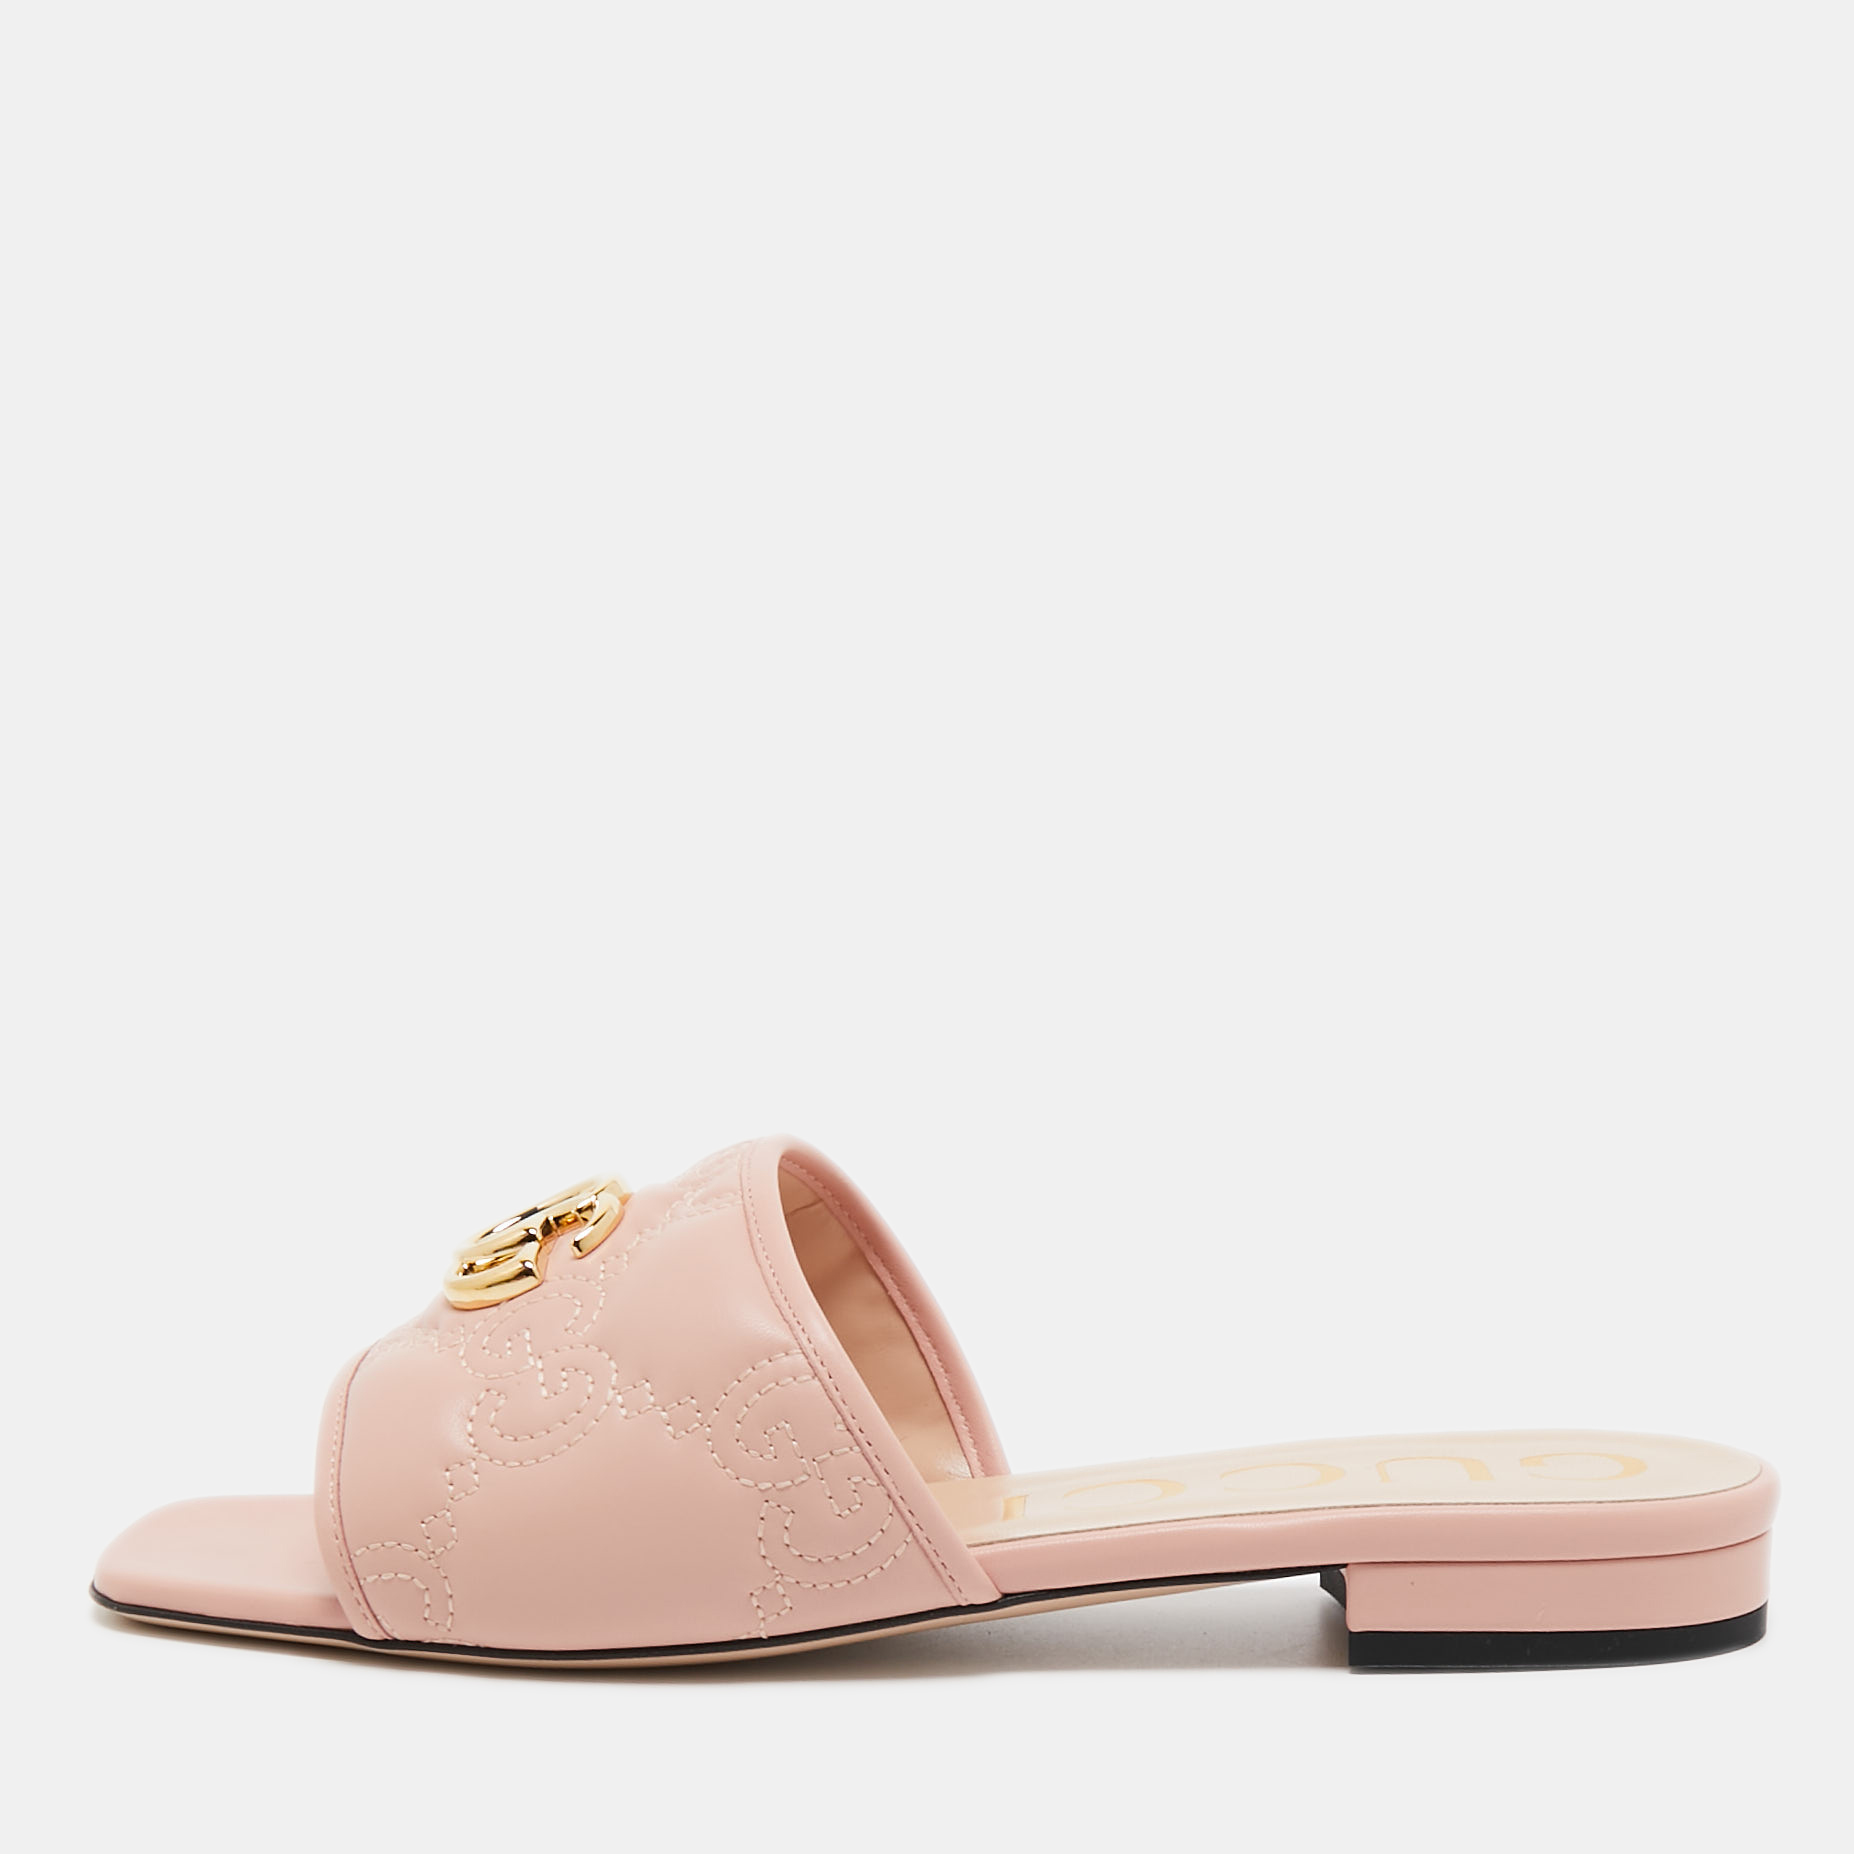 Gucci Pink Matelassé Leather GG Marmont Slide Sandals Size 40